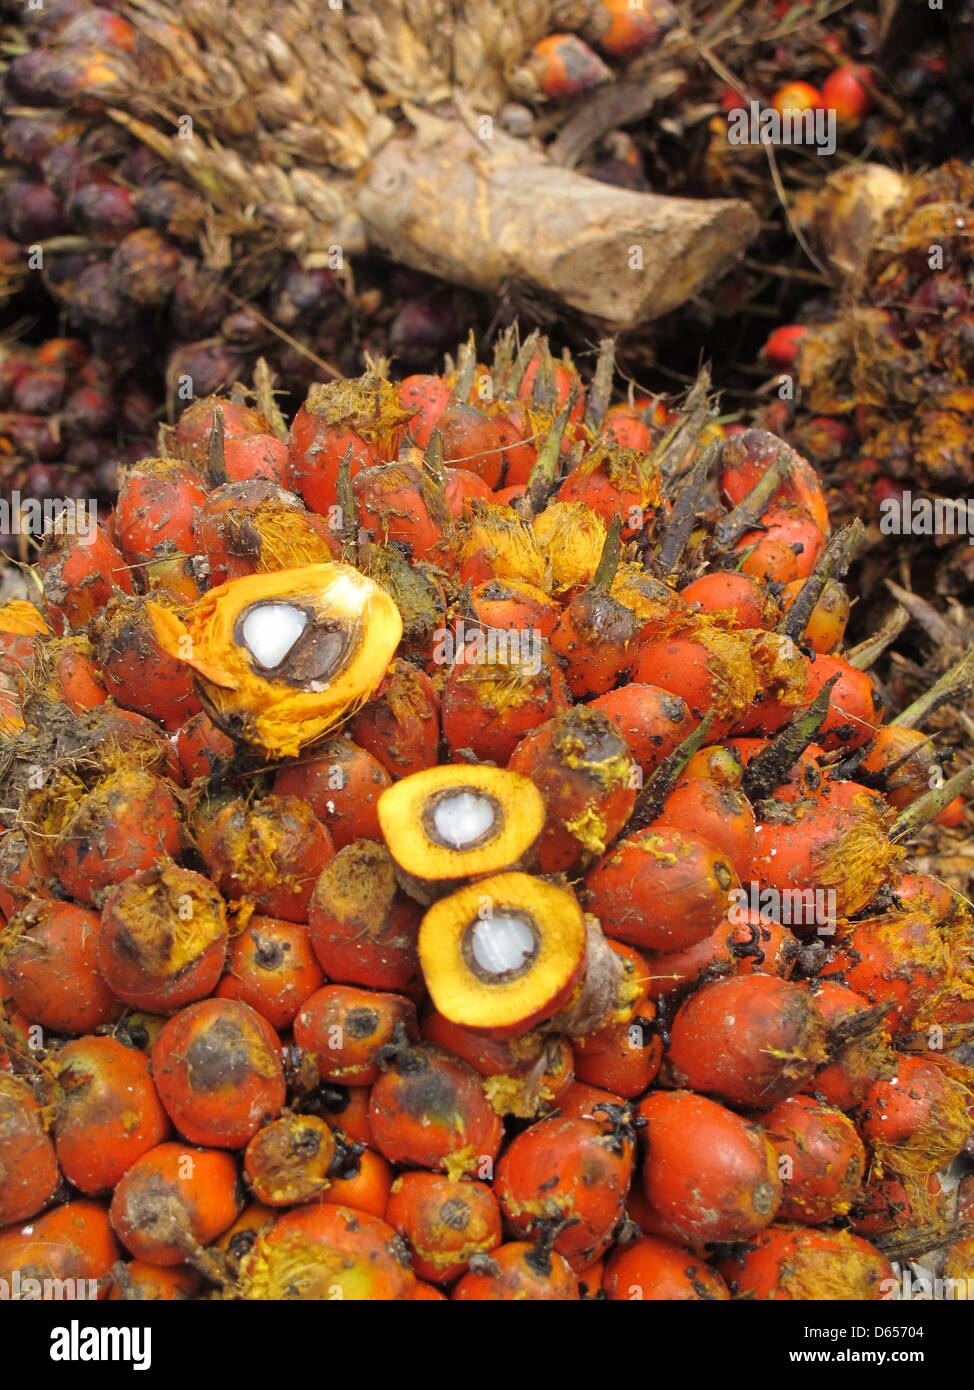 Eine Palmöl-Obst-Reihe wird in Playpraya in der Provinz Krabi, Thailand, 29. Mai 2012 präsentiert. Palmöl ist das produktivste Pflanzenöl in der Welt. Ein Baum wächst rund 15 Fruchtstände jährlich mit Dutzenden von einzelnen Palmöl Früchte. Öl wird aus dem Fruchtfleisch gewonnen. Die Kerne sind separat gepresst, um noch wertvoller Palmkernöl zu produzieren. Foto: Christiane Stockfoto